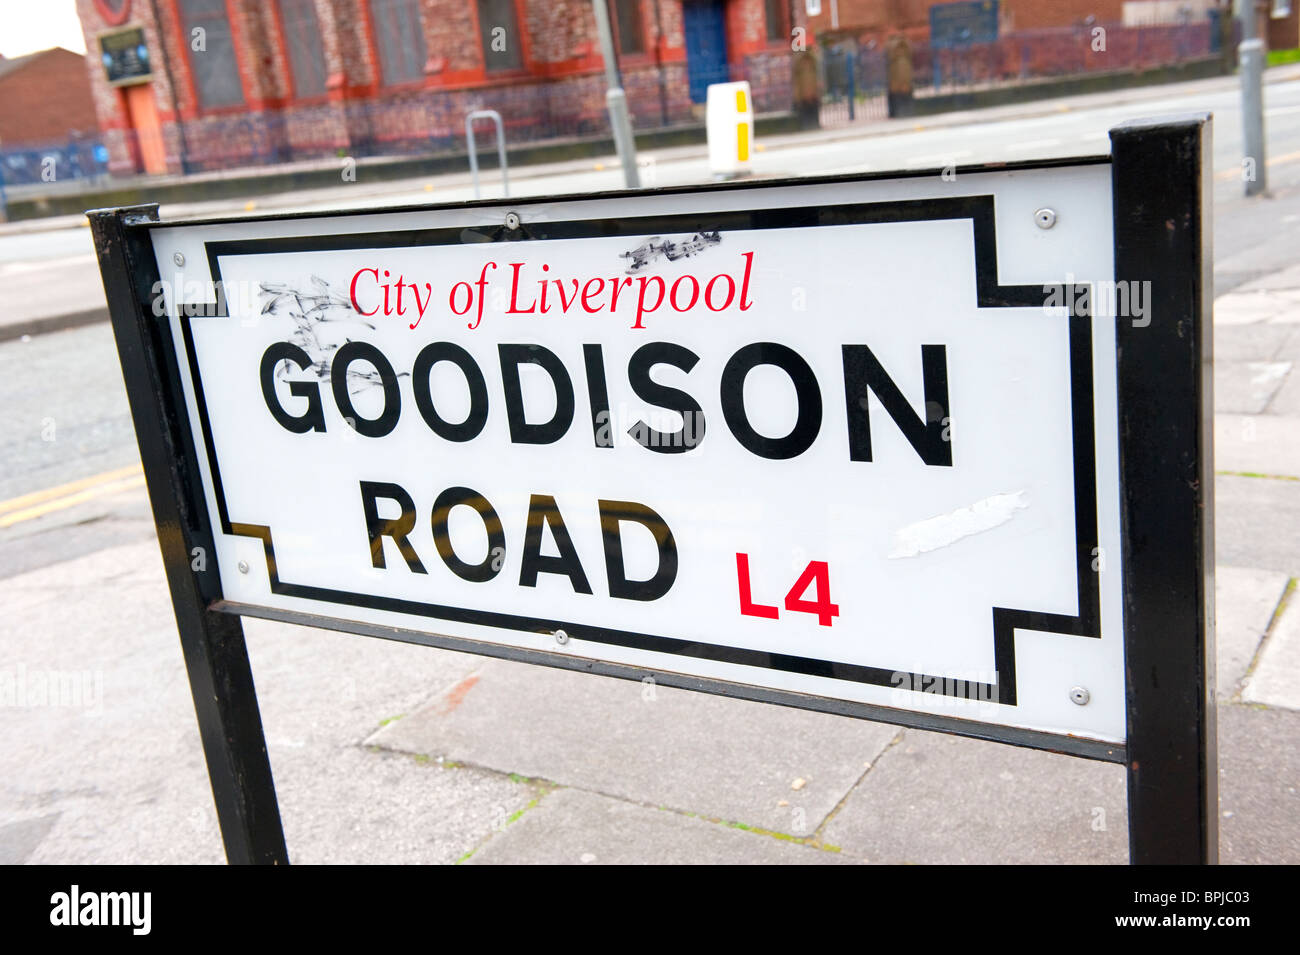 Goodison Goodison Park Liverpool Road Banque D'Images